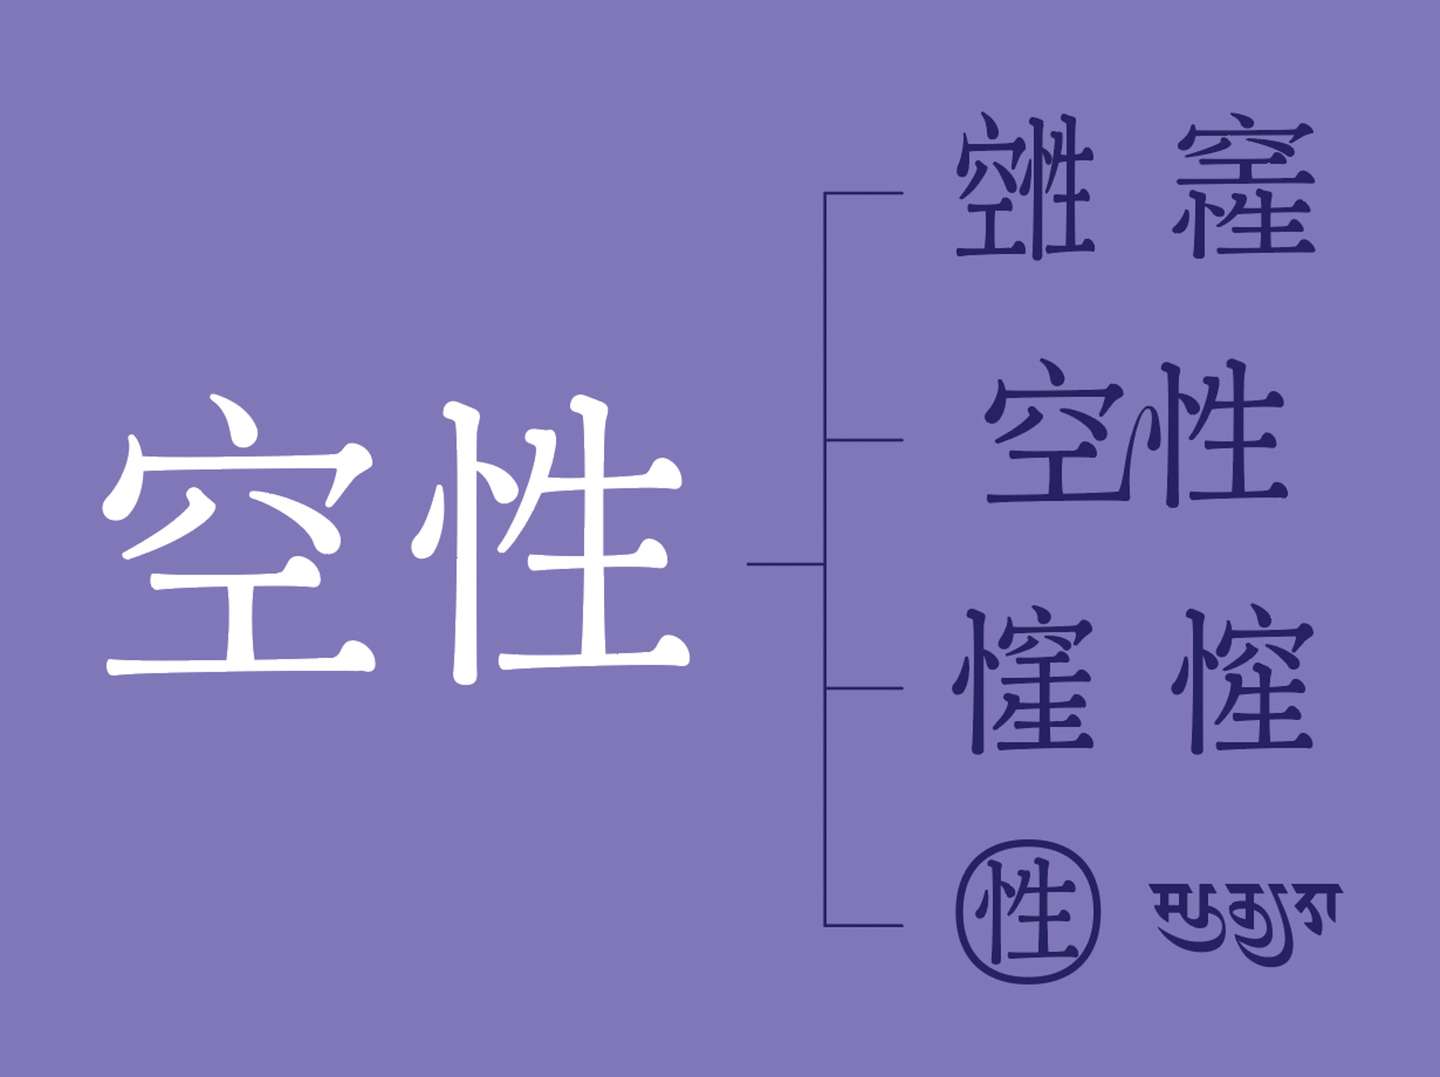 中文合字的探索 知乎